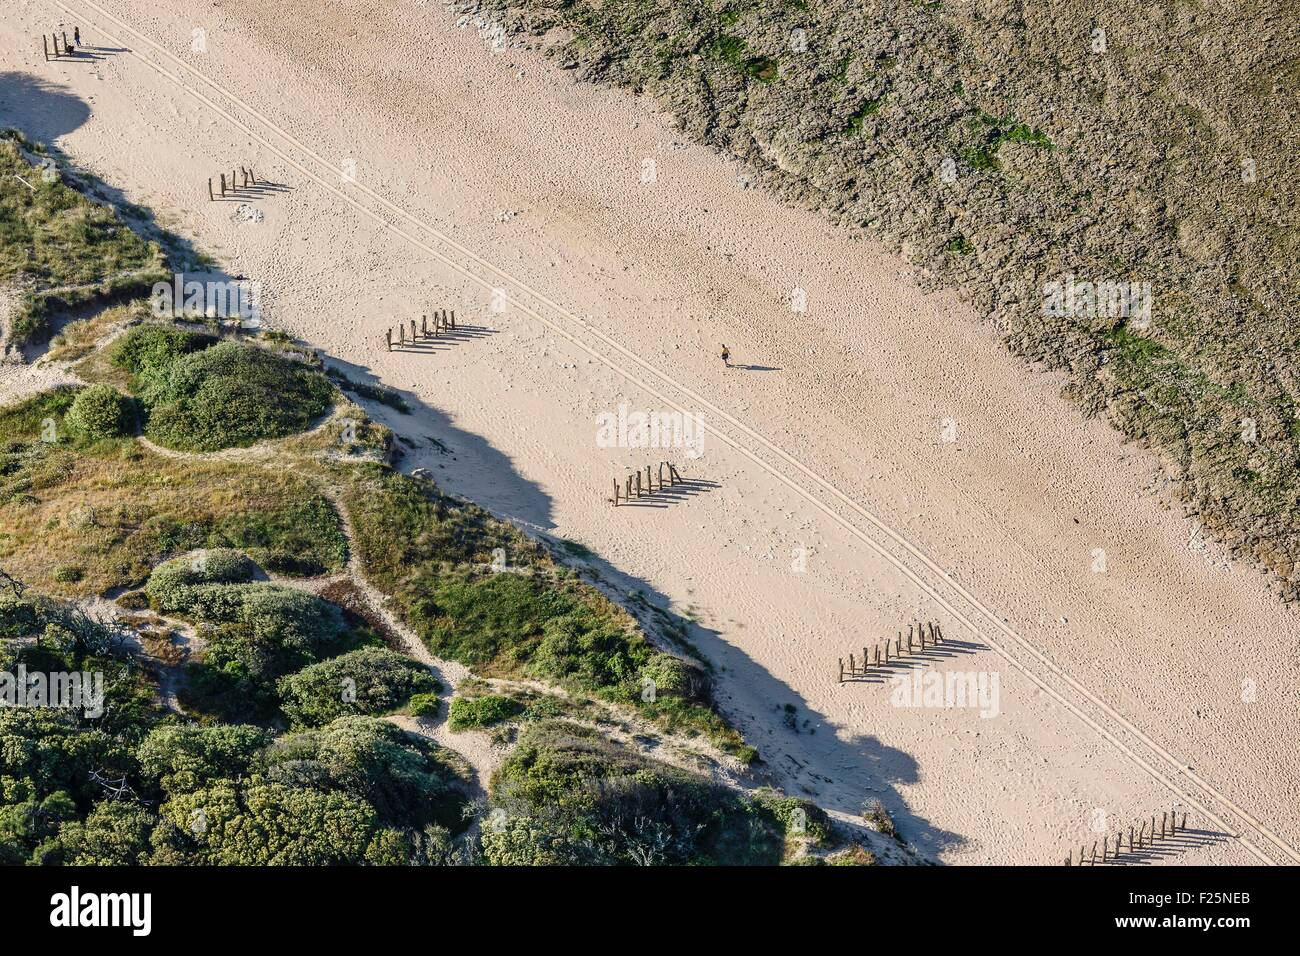 Francia, Charente Maritime, Le grand village plage, pali di legno sulla spiaggia per proteggere la duna da erosione (vista aerea) Foto Stock